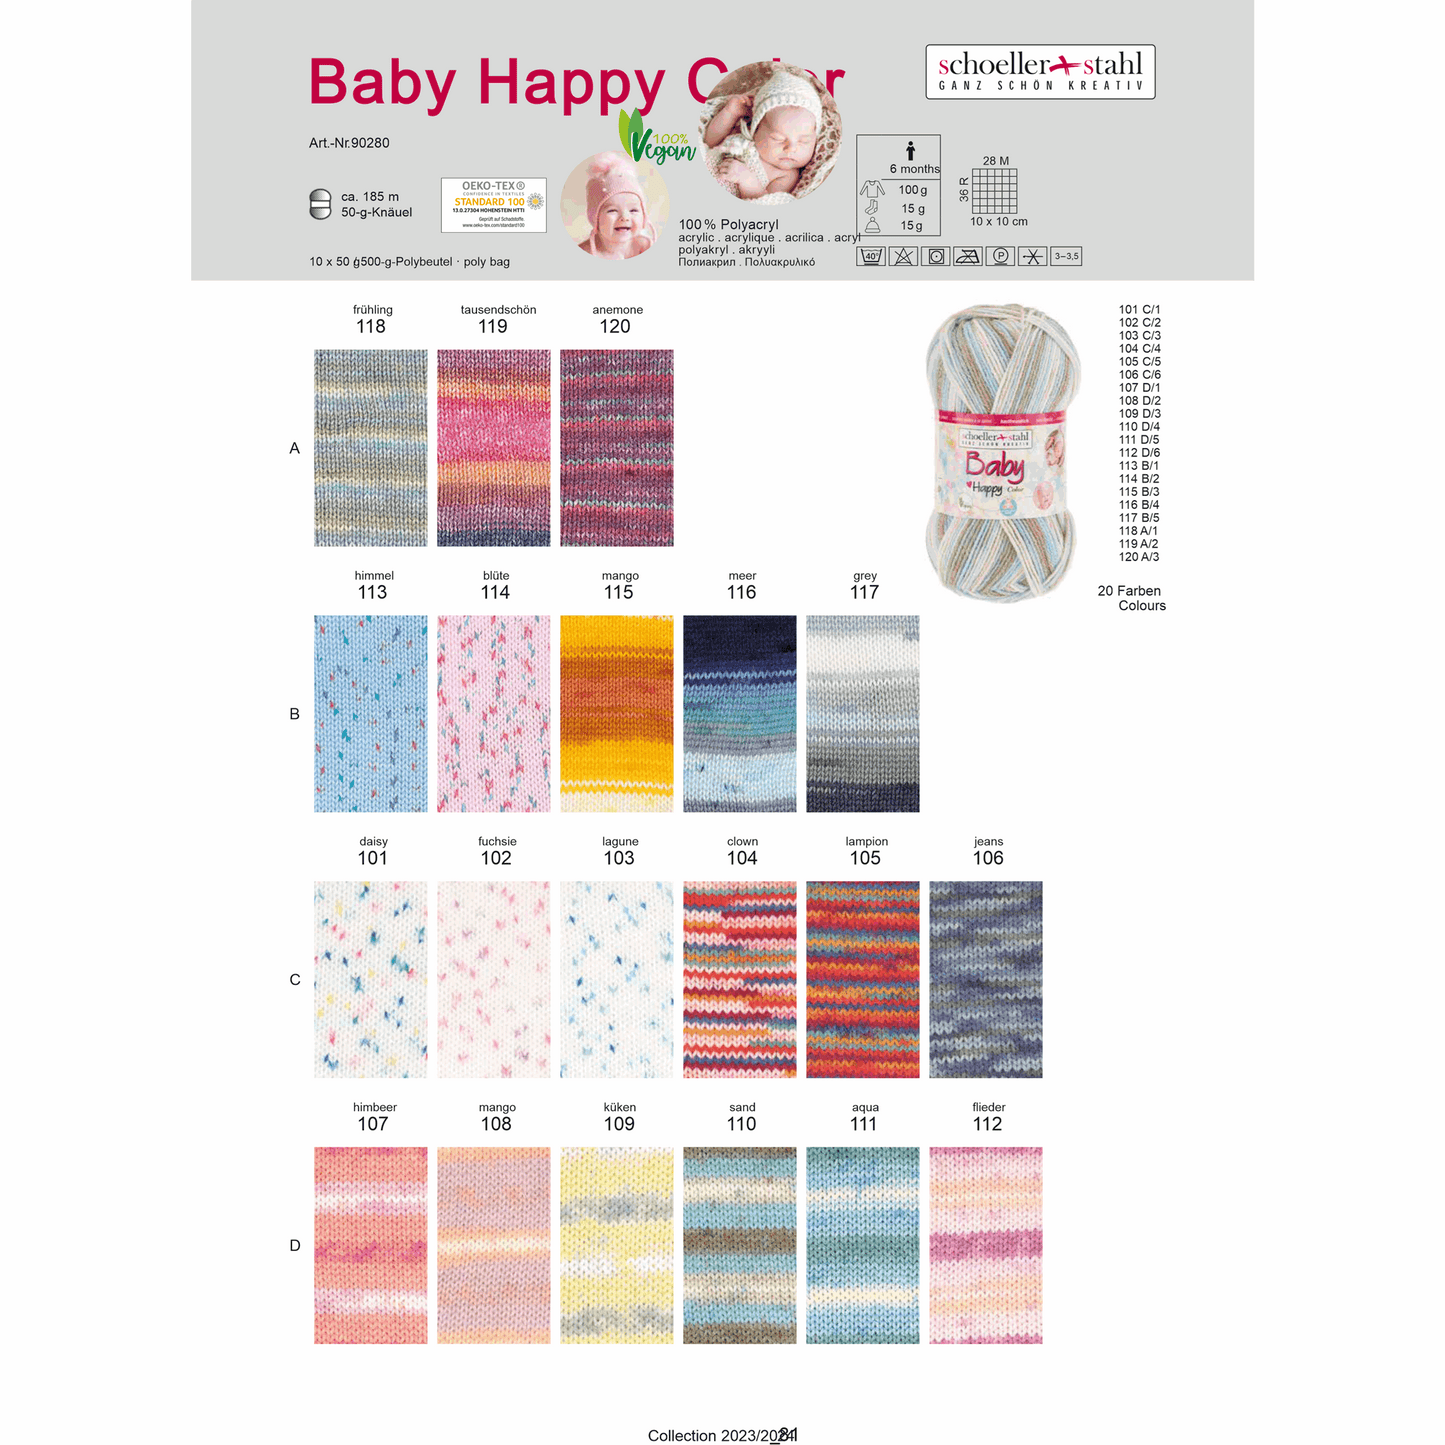 Baby happy color 50g, 90280, color 118, spring